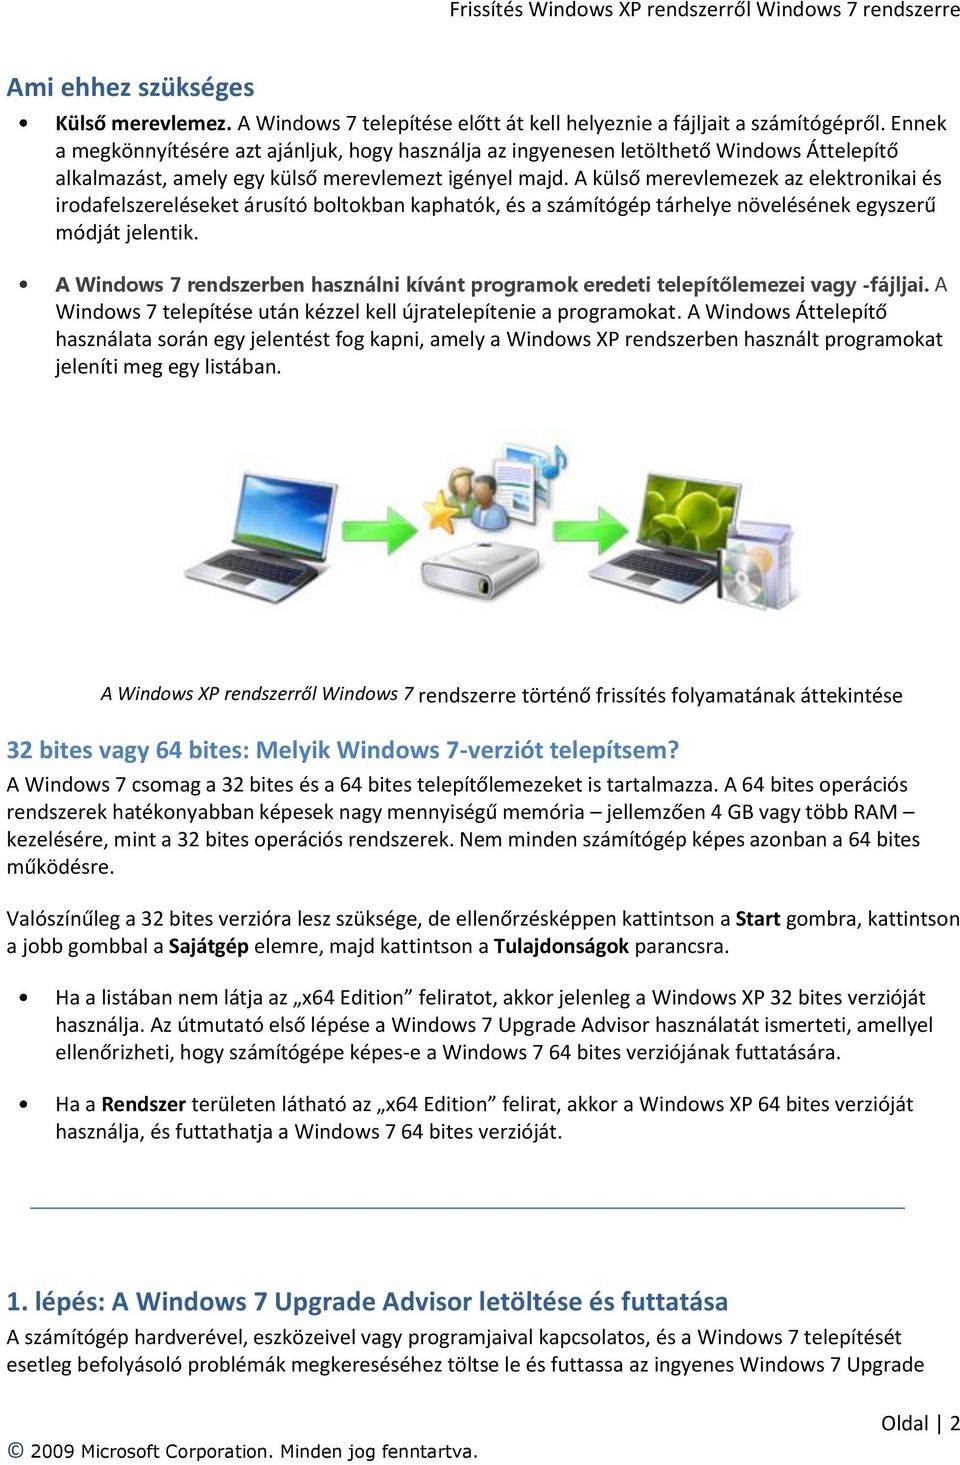 Frissítés Windows XP rendszerről Windows 7 rendszerre - PDF Free Download